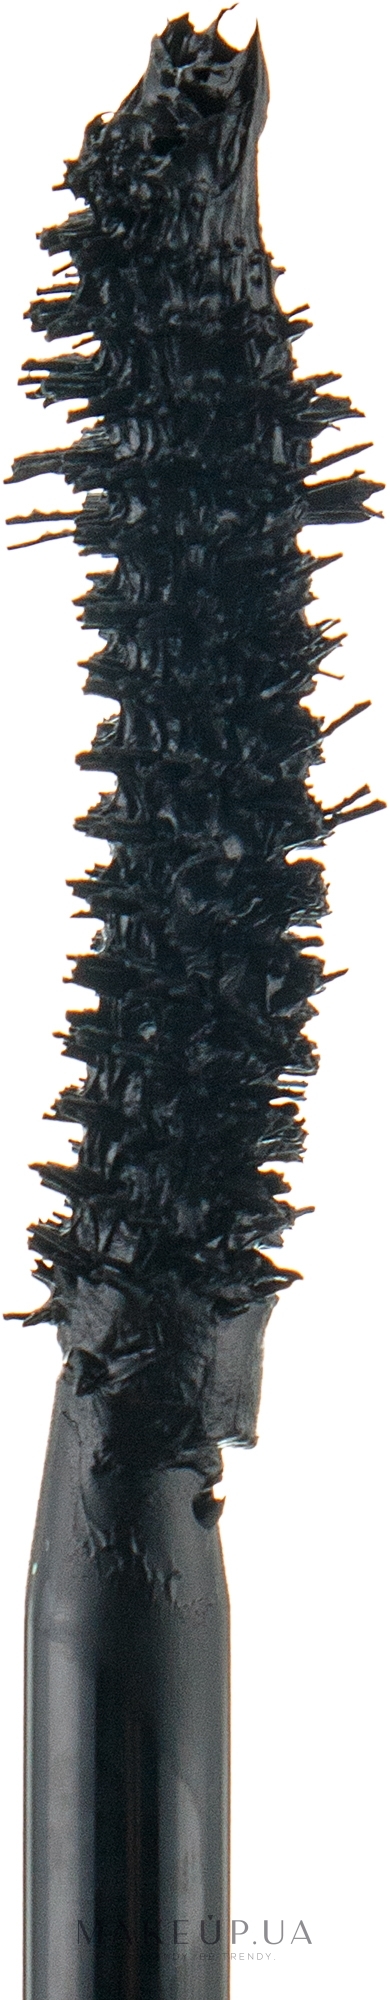 Тушь для ресниц - Clarins Supra Lift & Curl (тестер) — фото 01 - Black